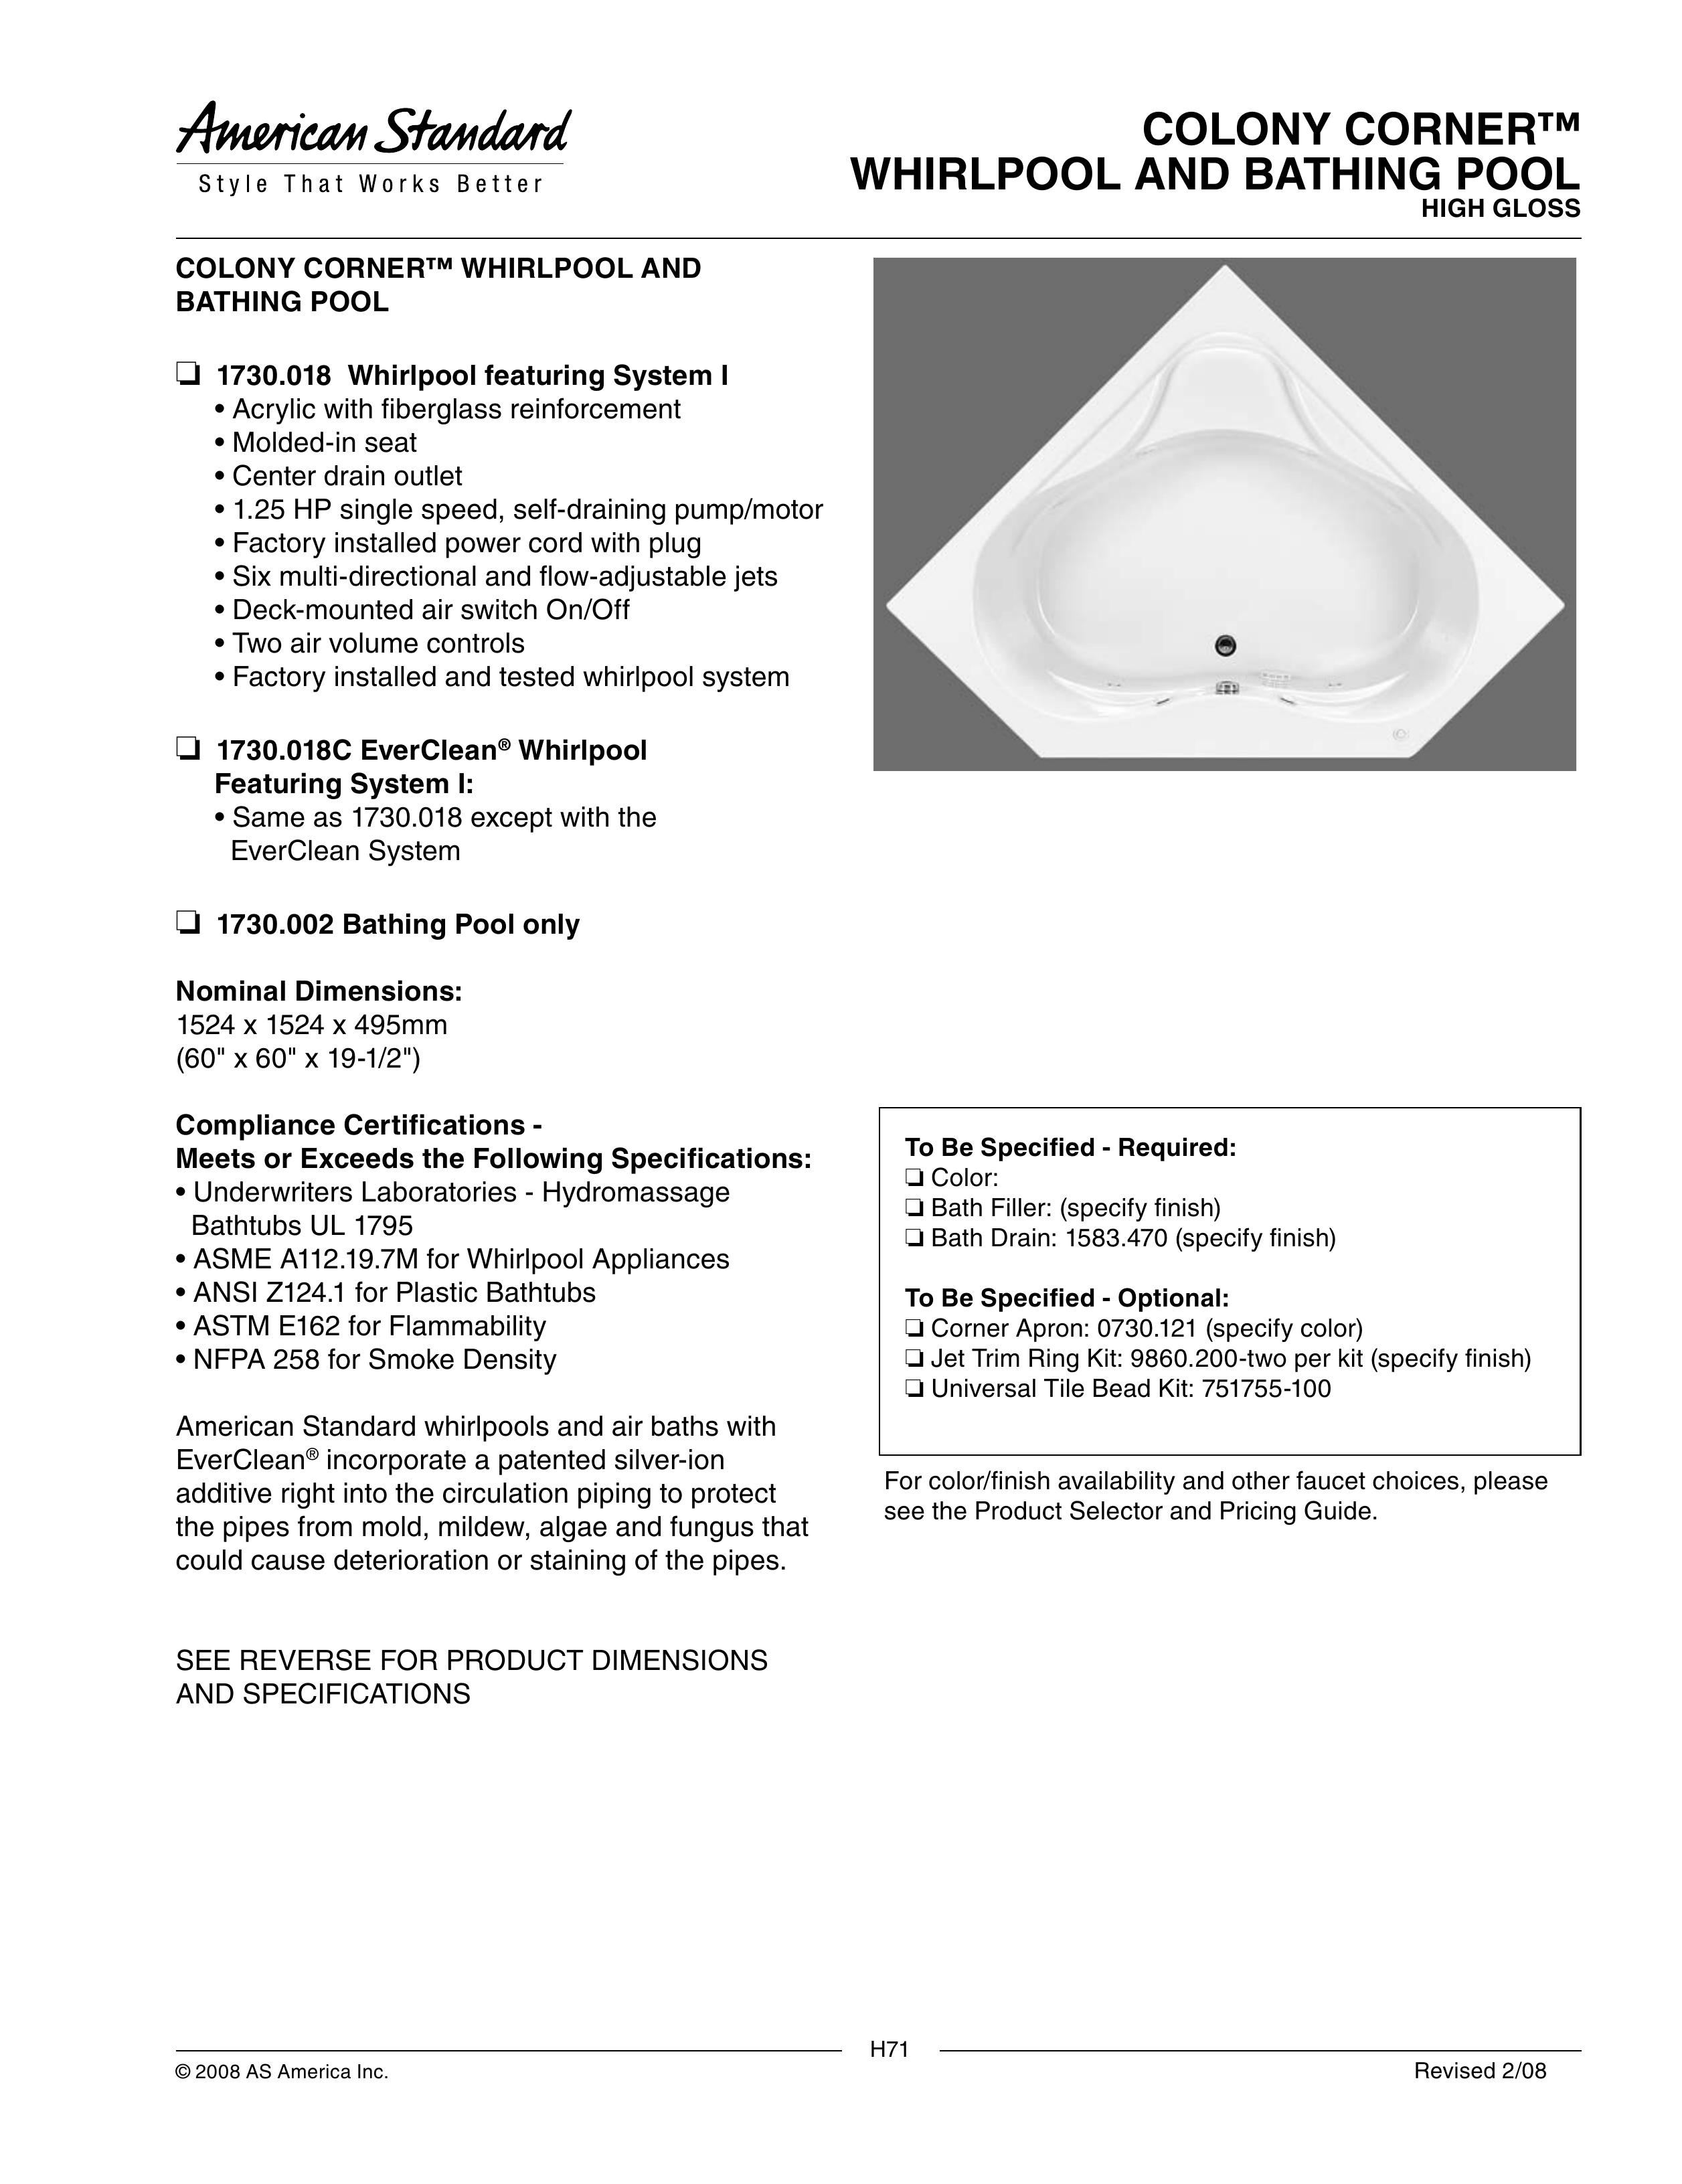 American Standard 1730.002 Hot Tub User Manual